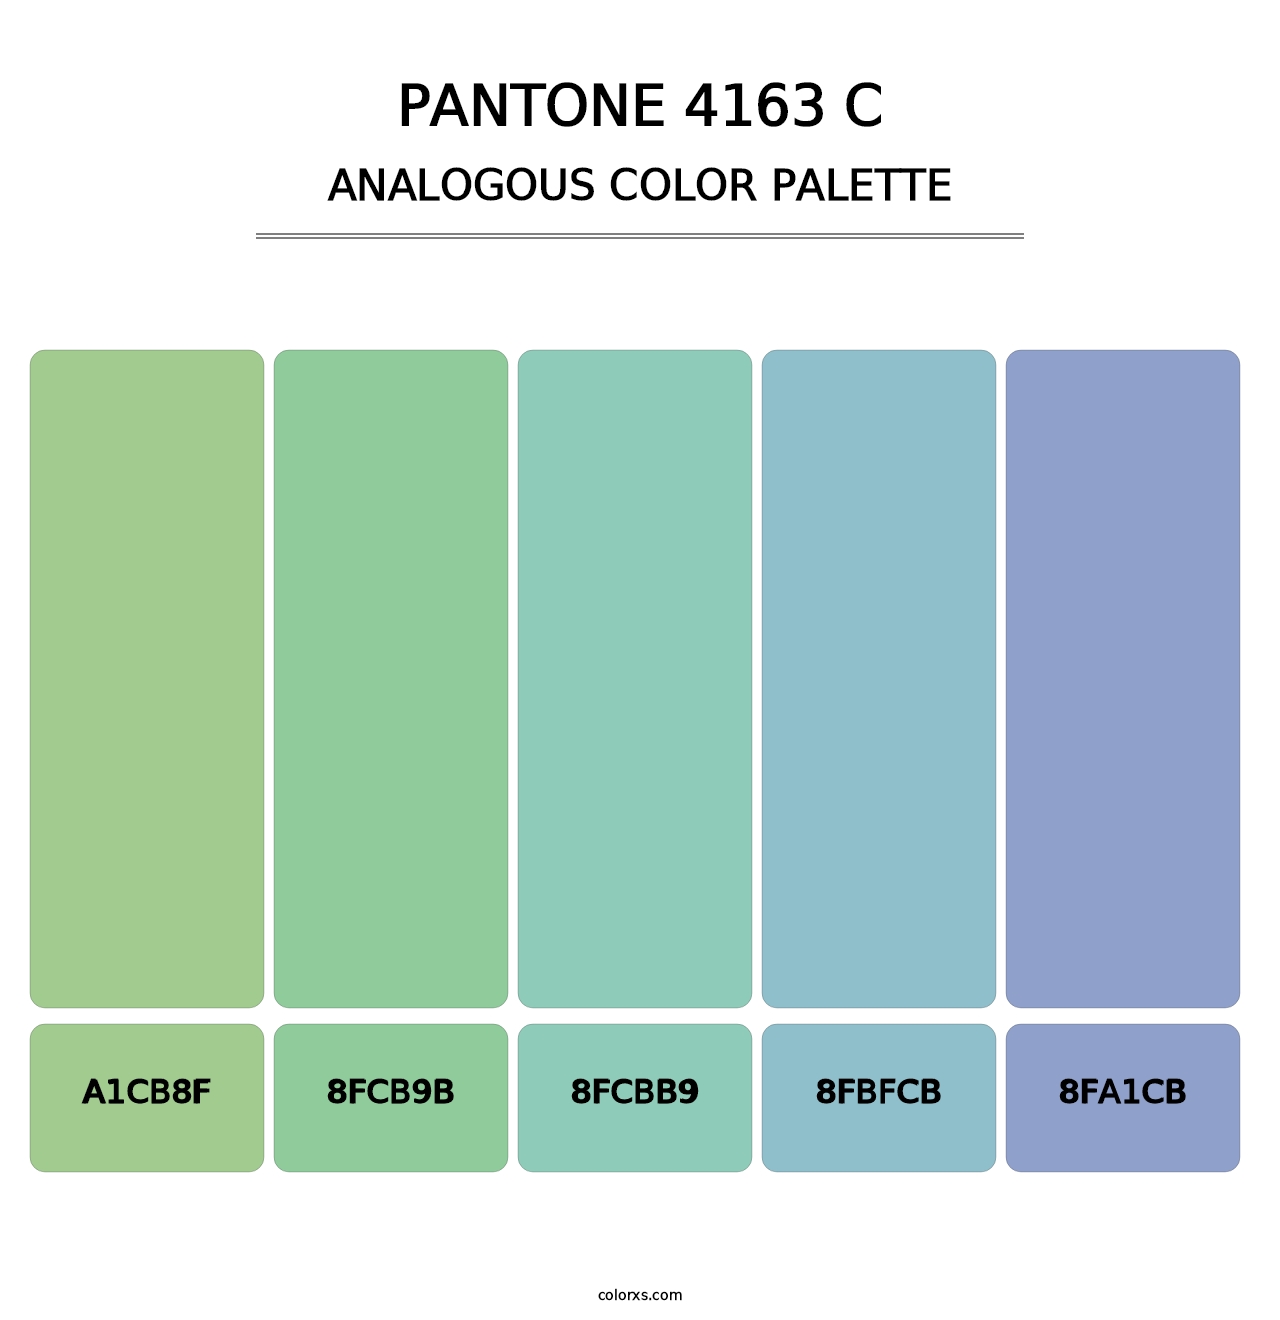 PANTONE 4163 C - Analogous Color Palette